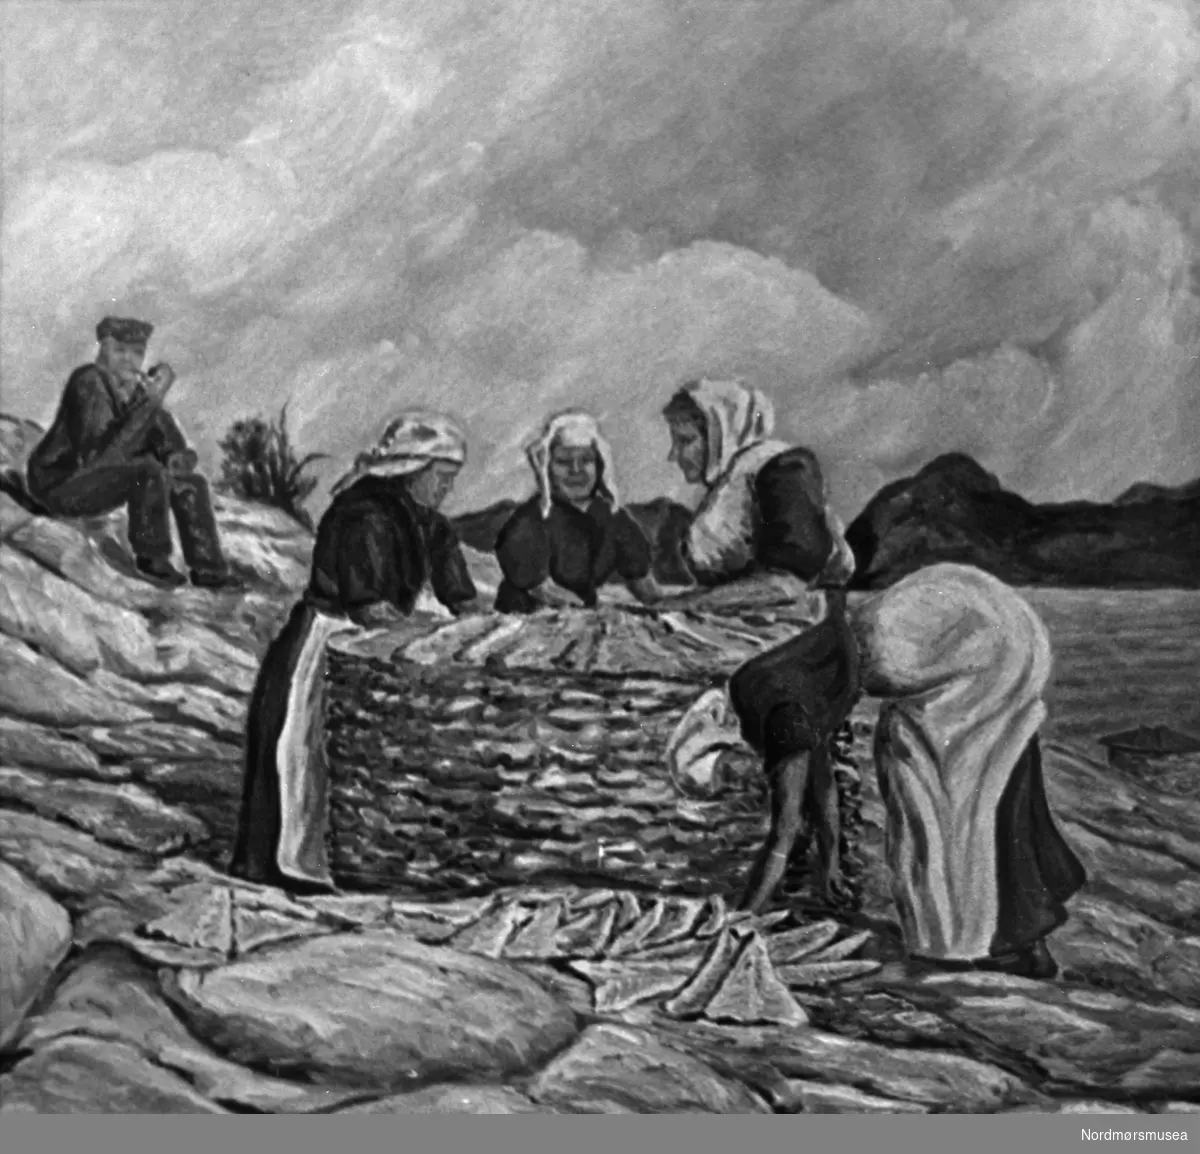 Maleri av fire kvinner som stabler klippfisk i la på tørkebergene i Kristiansund, mens en oppsynsmann sitter og røyker pipe i bakgrunnen. Kunstner er H. Stokstad. Dateres trolig til 1930-årene. Fra Nordmøre museums fotosamlinger.